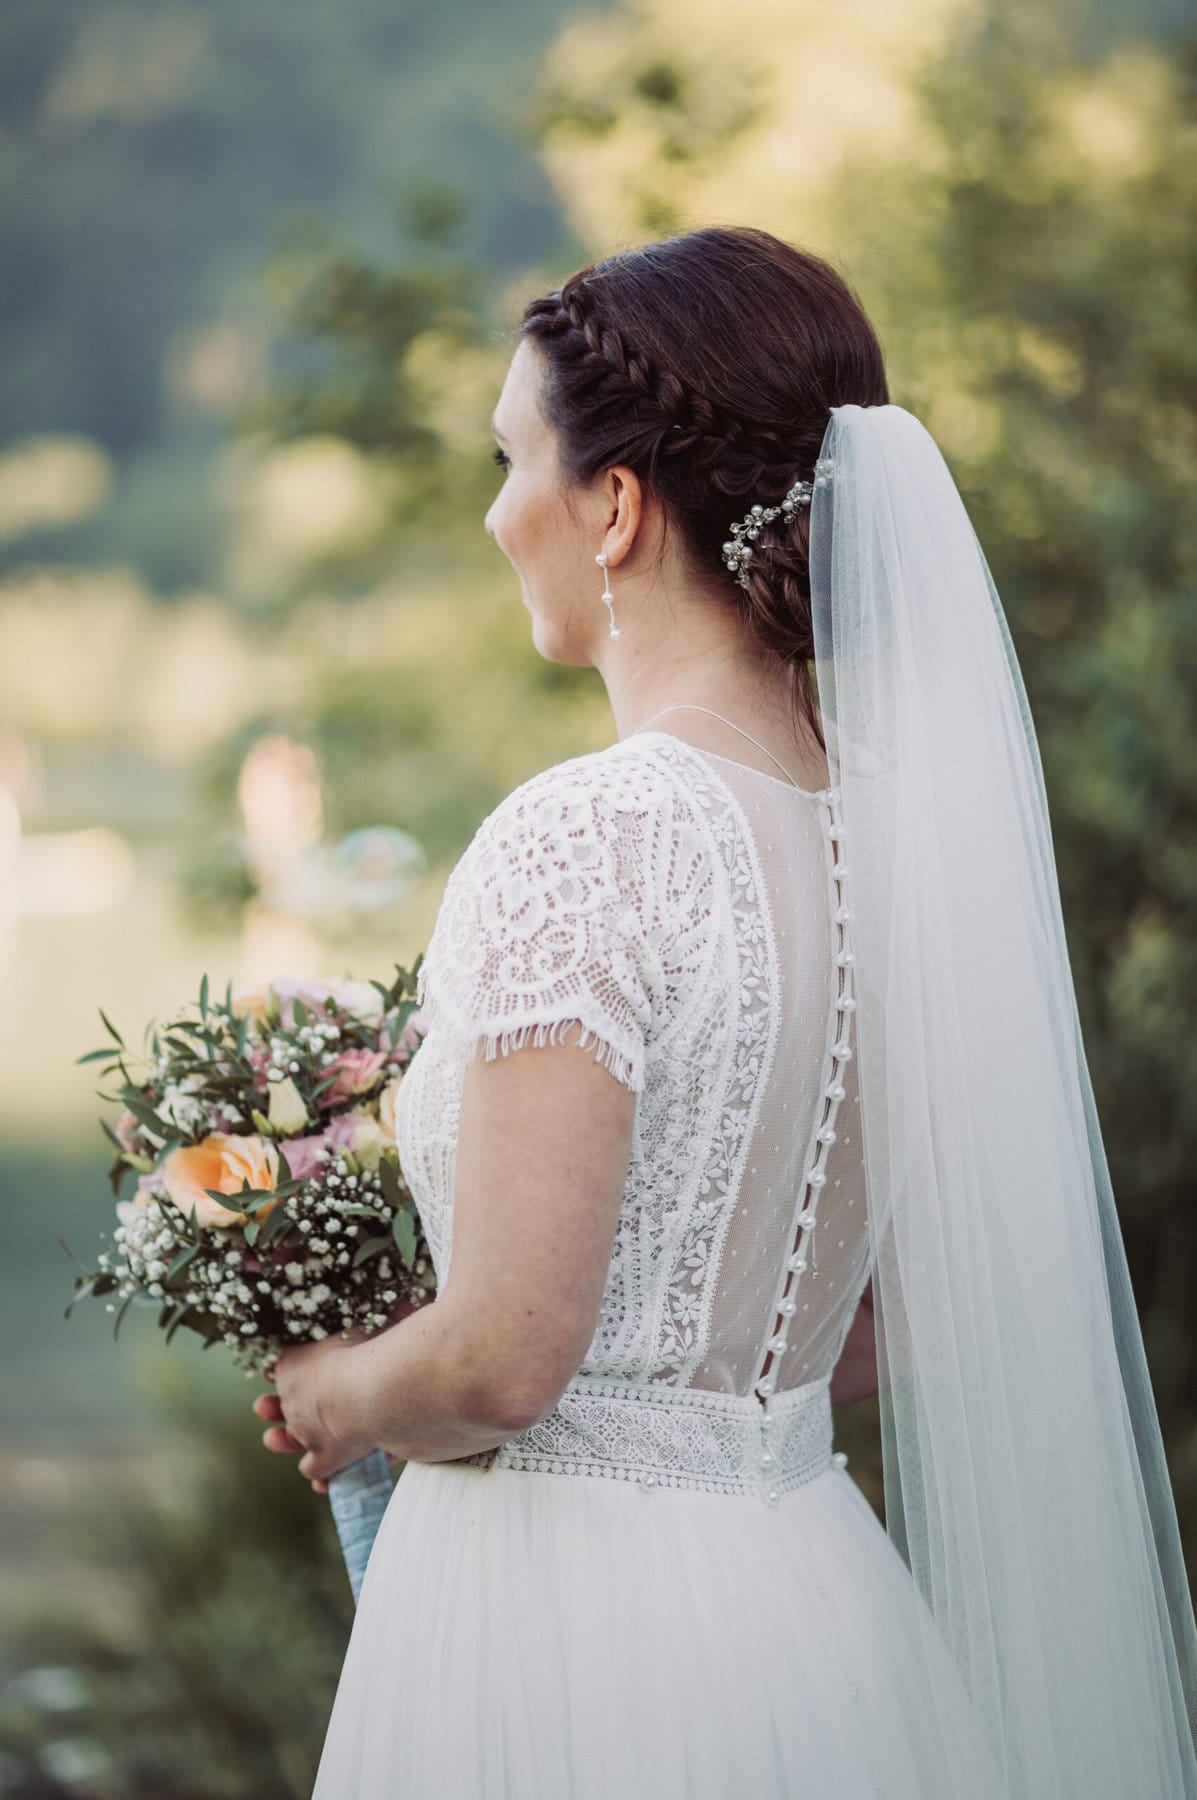 Das Hochzeitsshooting in Oberbayern am Schliersee. Die Braut steht von hinten, sodass man ihre Frisur und Schleier gut erkenne kann.